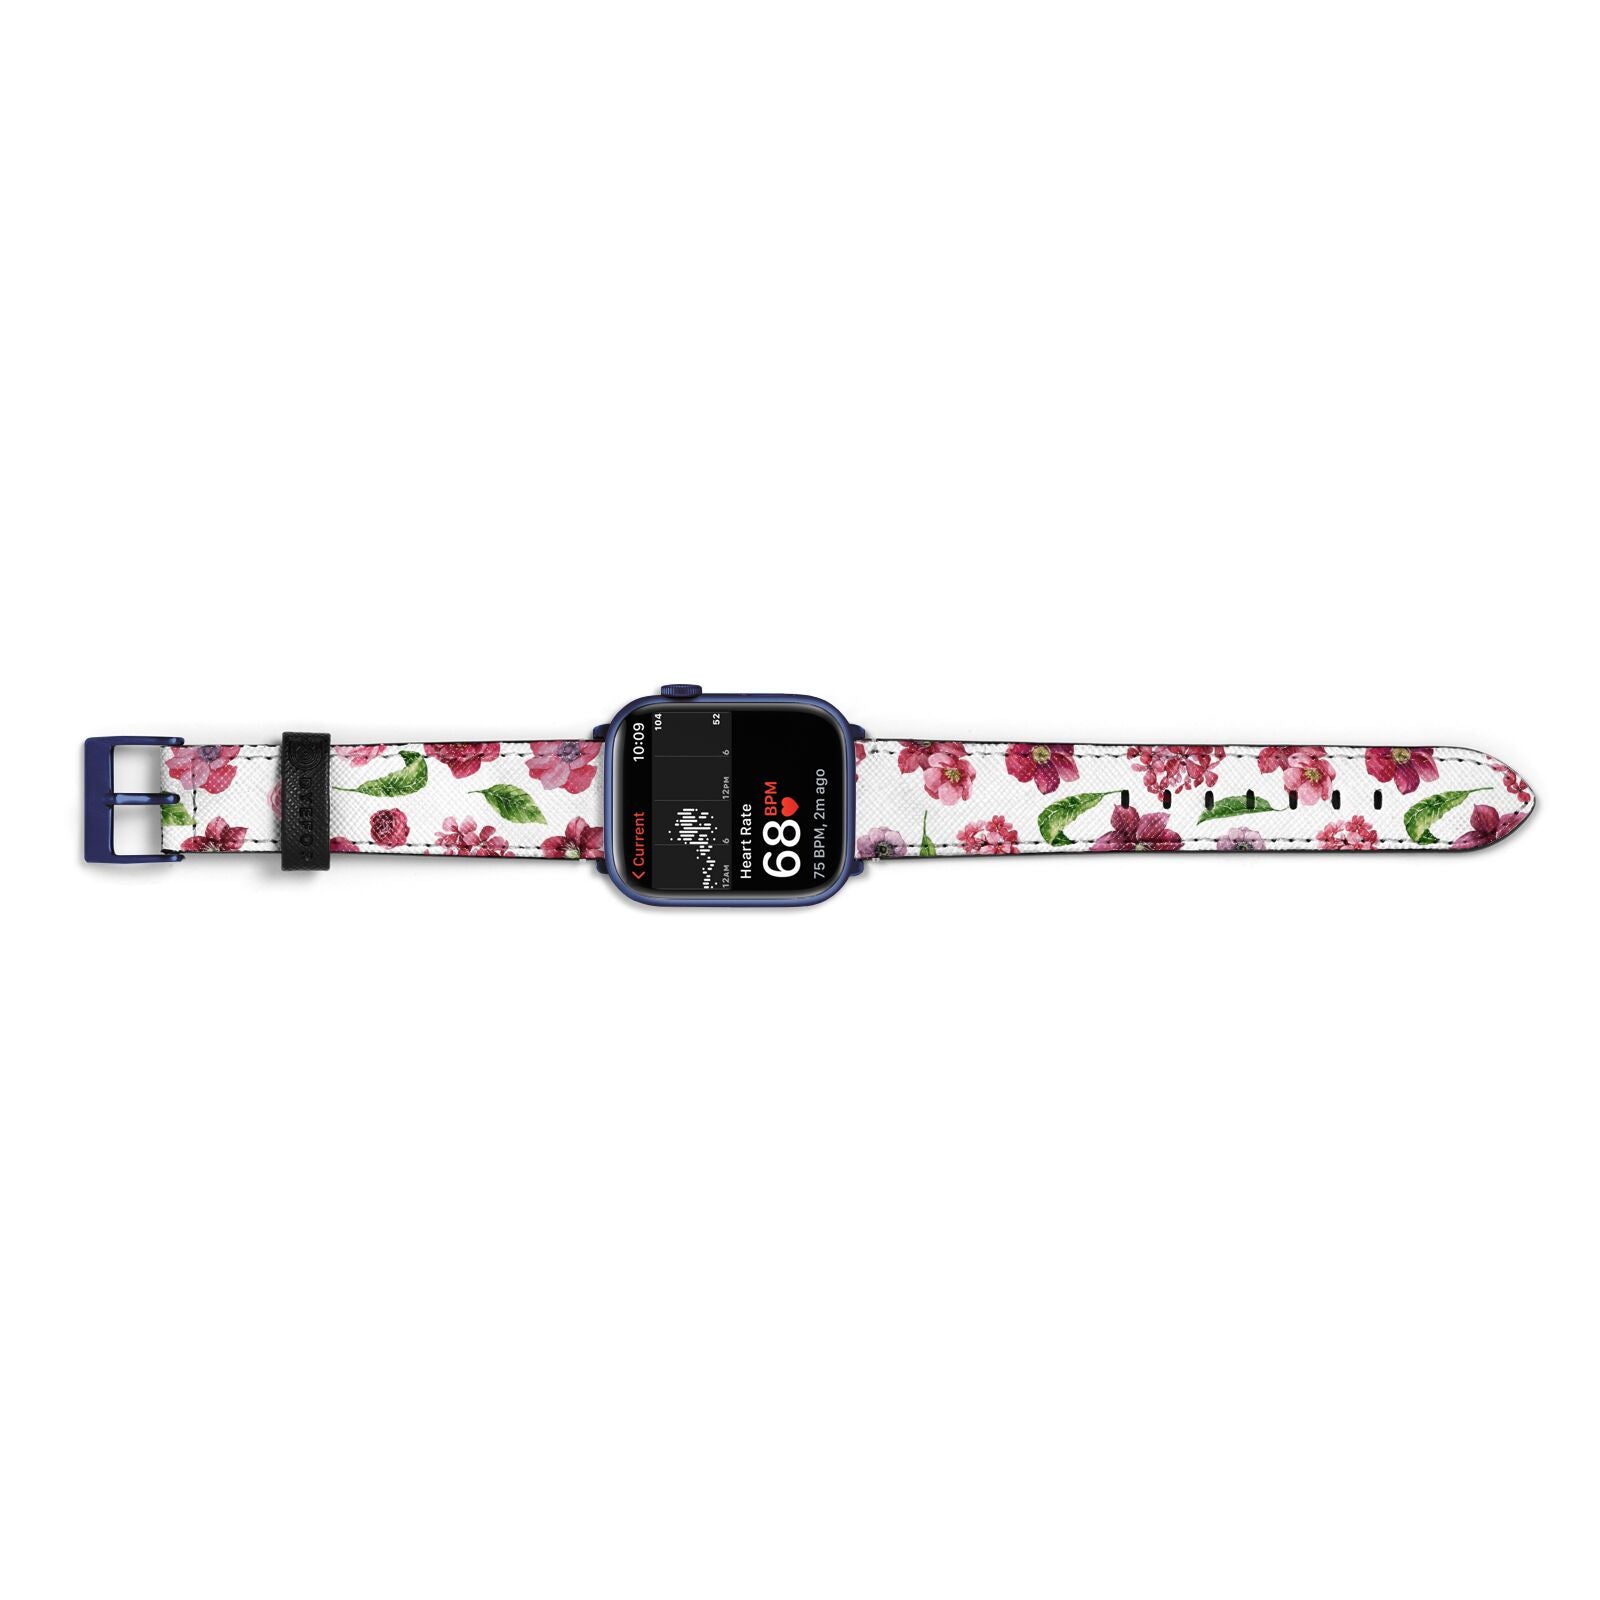 Pink Floral Apple Watch Strap Size 38mm Landscape Image Blue Hardware